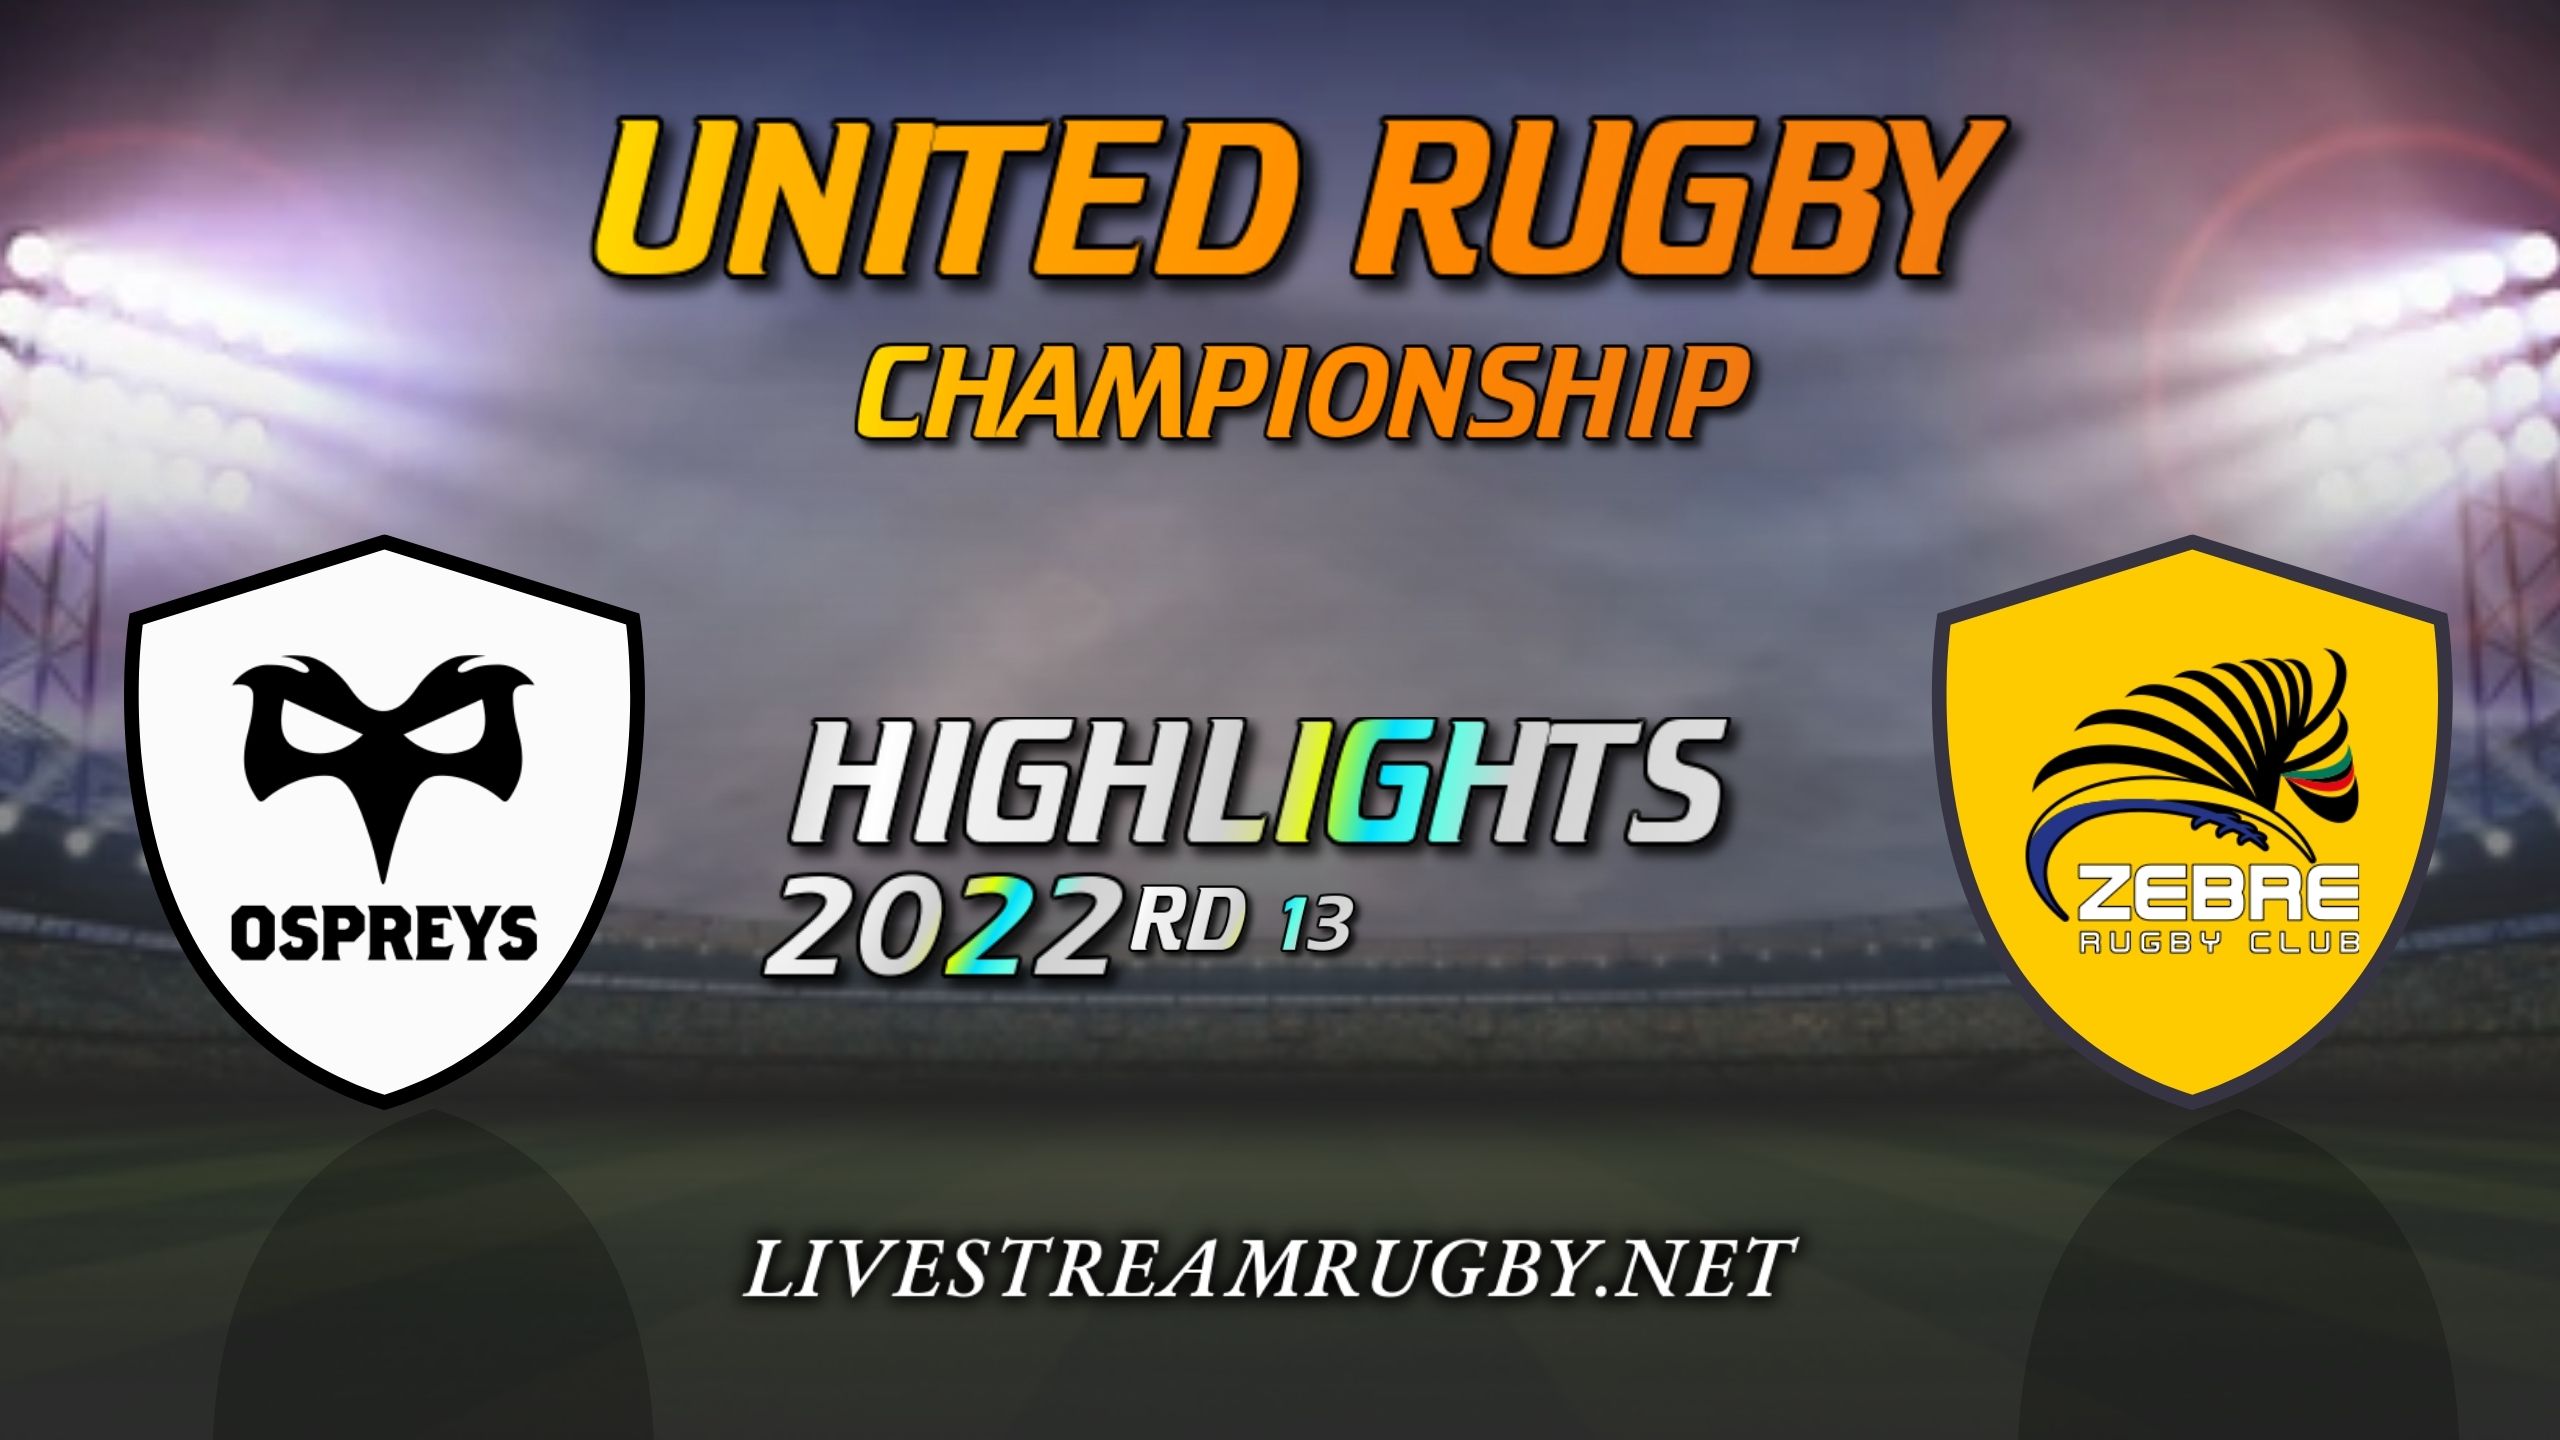 Ospreys Vs Zebre Highlights 2022 Rd 13 United Rugby